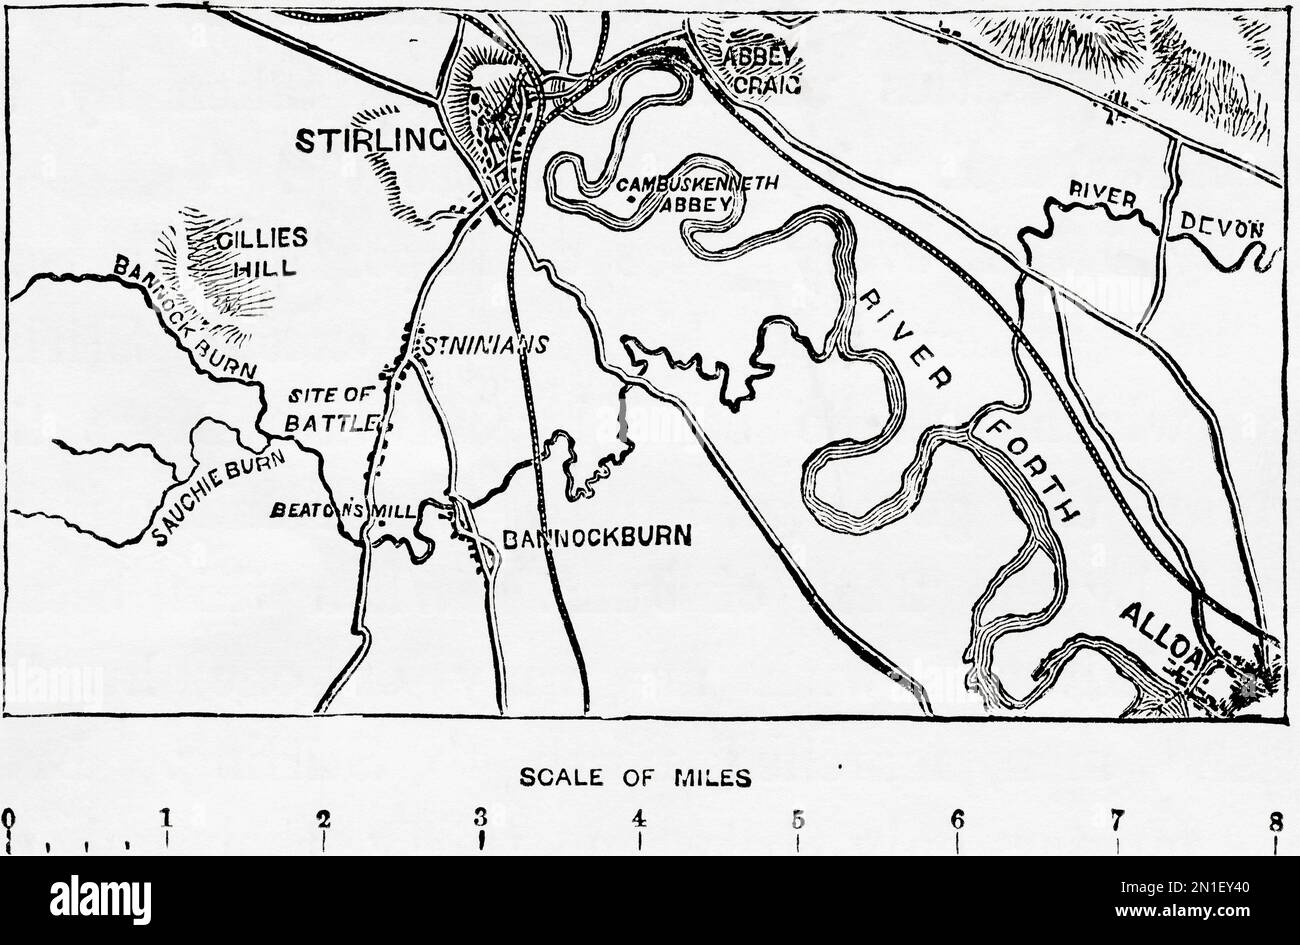 Karte mit dem Schauplatz der Schlacht von Bannockburn, 14. Jahrhundert. Aus der Geschichte Englands, veröffentlicht 1907 Stockfoto